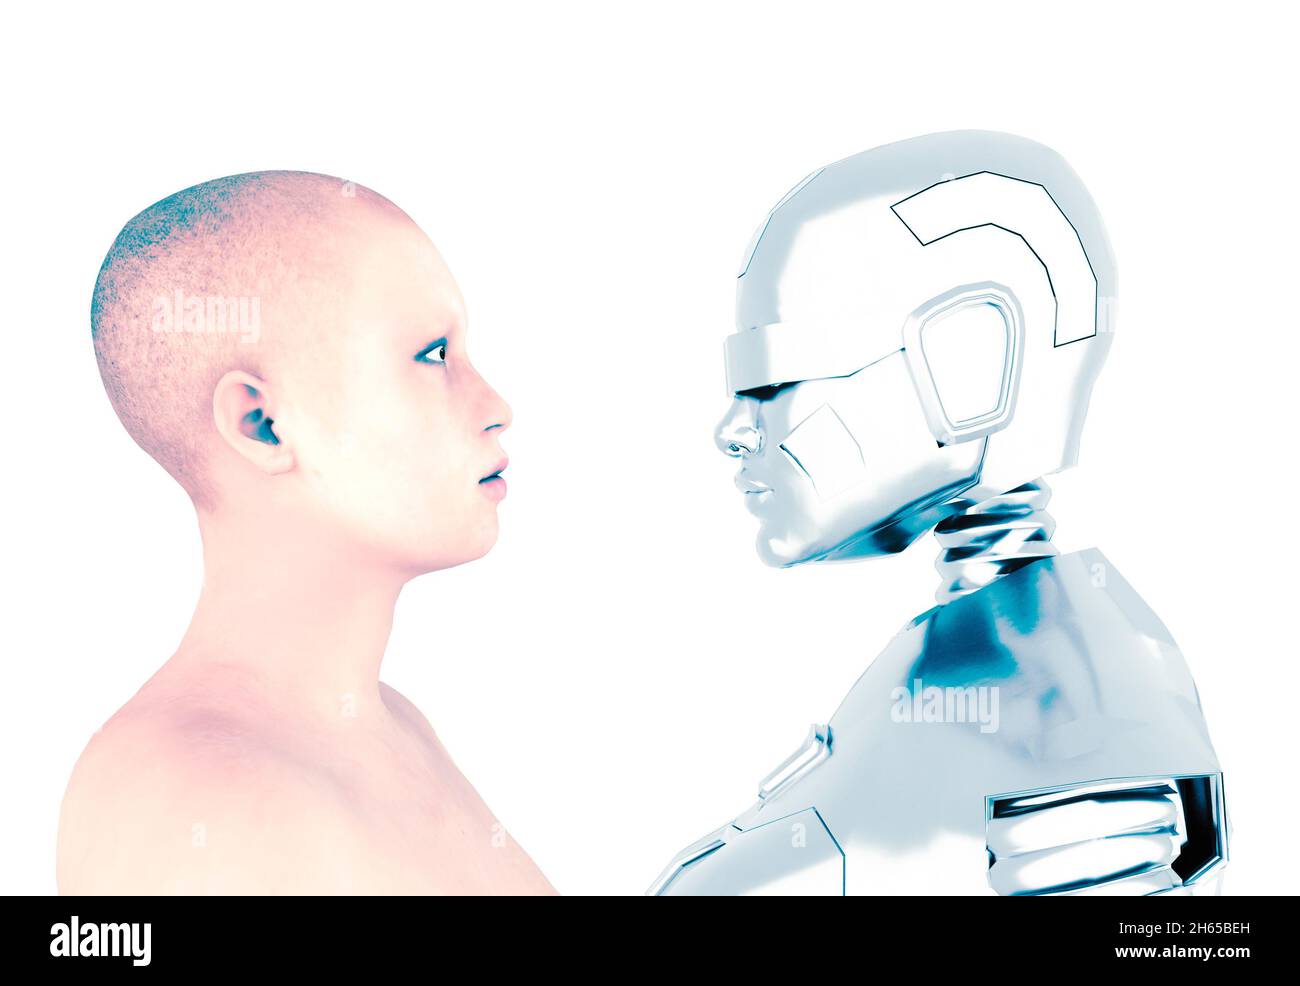 Monde numérique et monde analogique, femme humaine et femme robot, l'avenir de la race humaine.L'évolution de l'espèce.Femme et robot en profil Banque D'Images